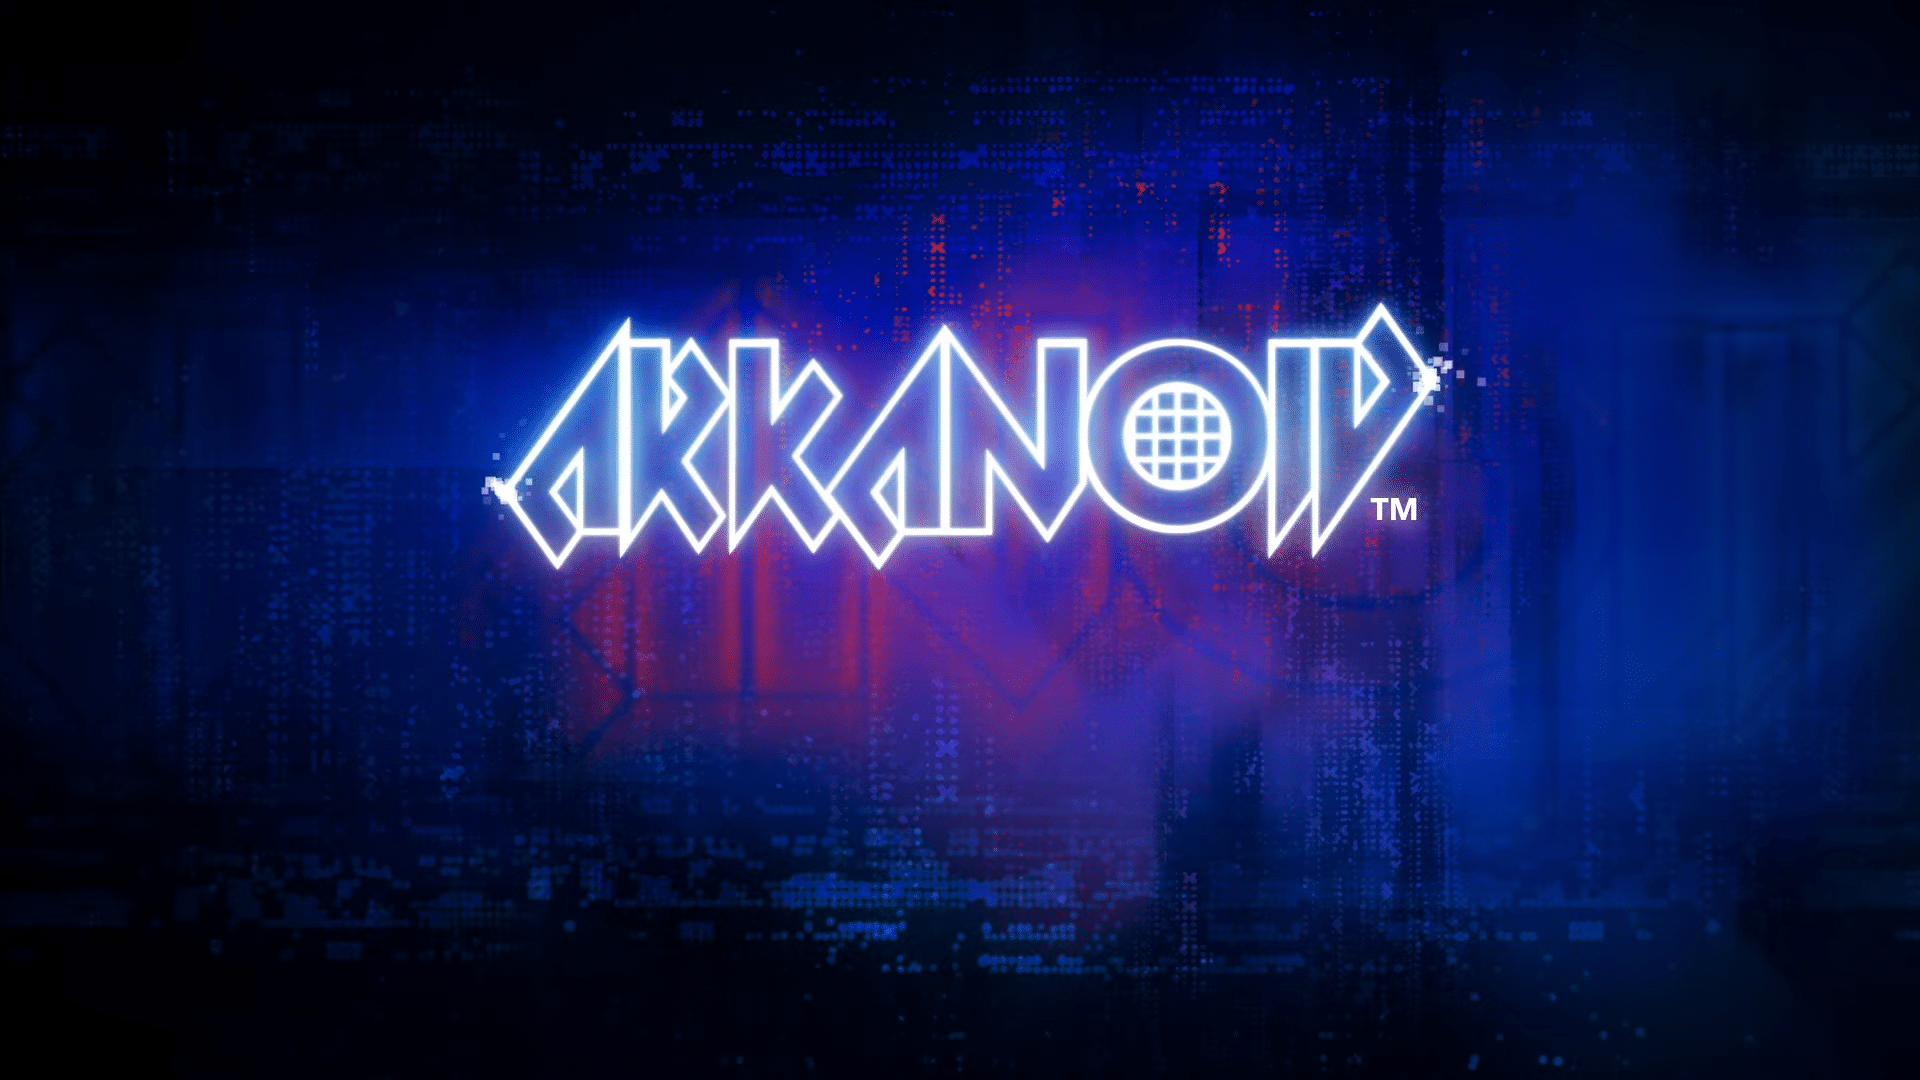 Arkanoid – Eternal Battle – A Modern Revival